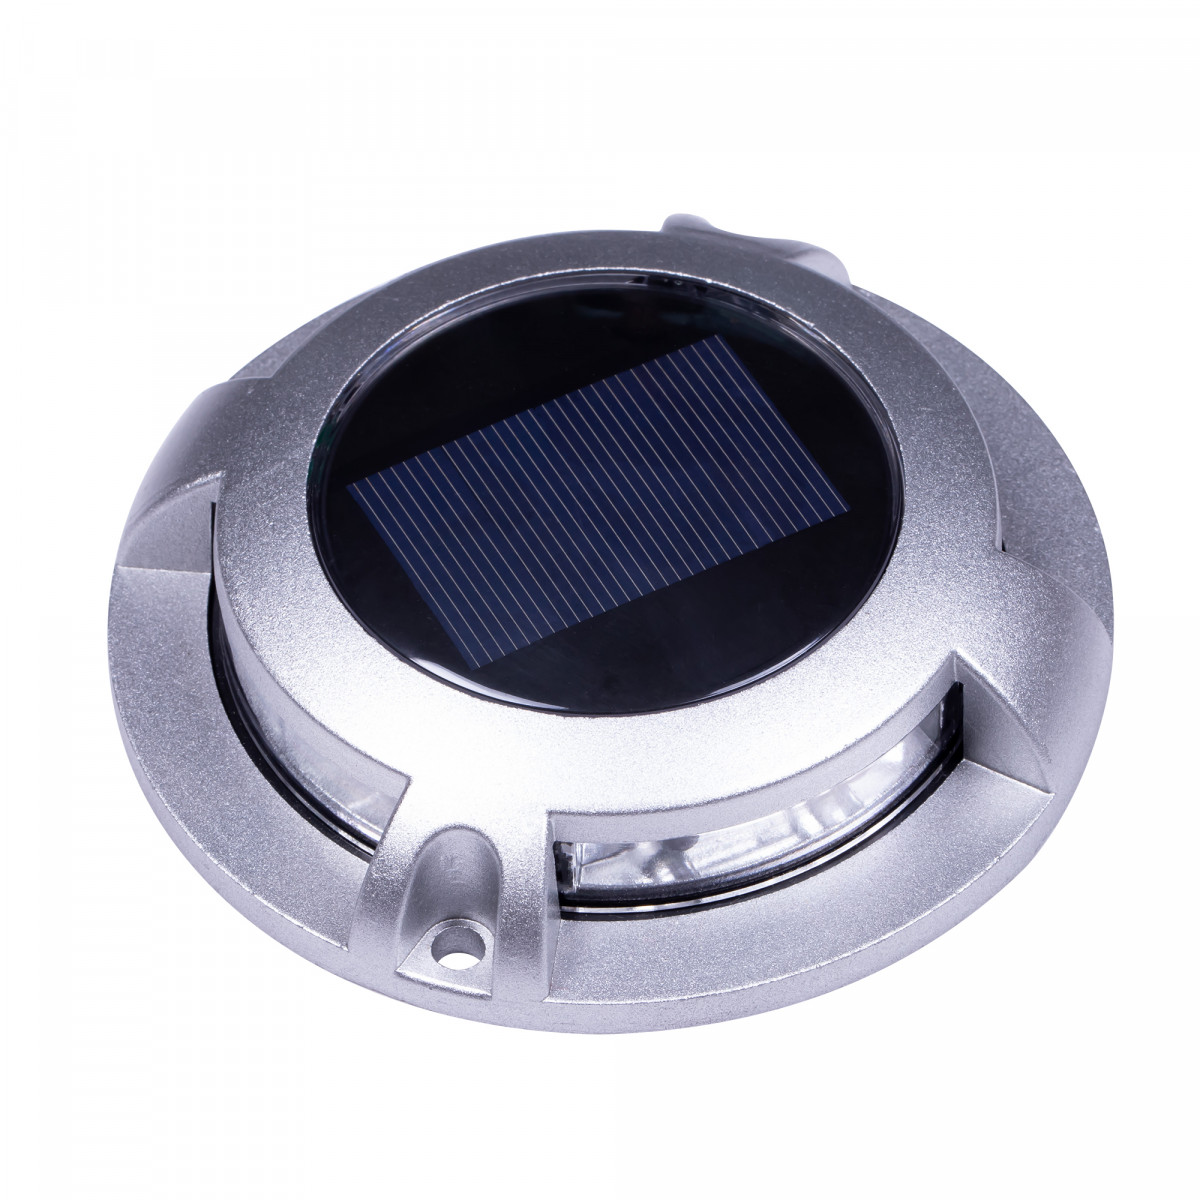 spot au sol - Solar LED Decklight - lampe solaire - spot à énergie solaire - Nostalux